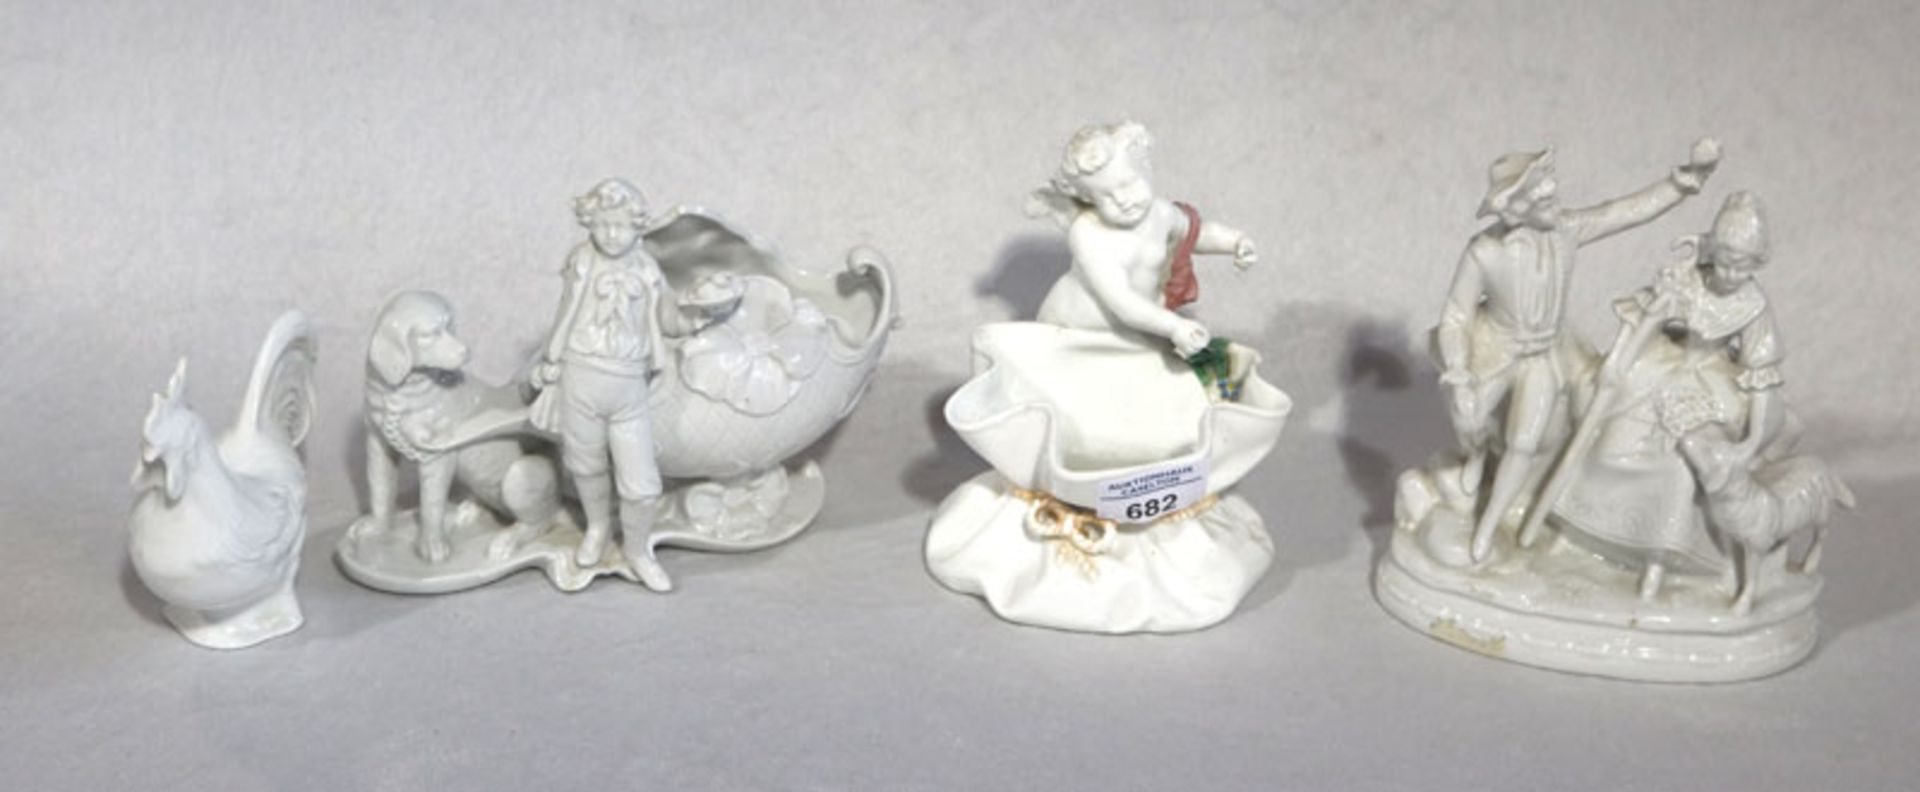 Porzellan-Keramik Konvolut: Paar mit Schaf, H 17 cm, Gockel, H 11 cm, Schale mit Knaben und Hund,